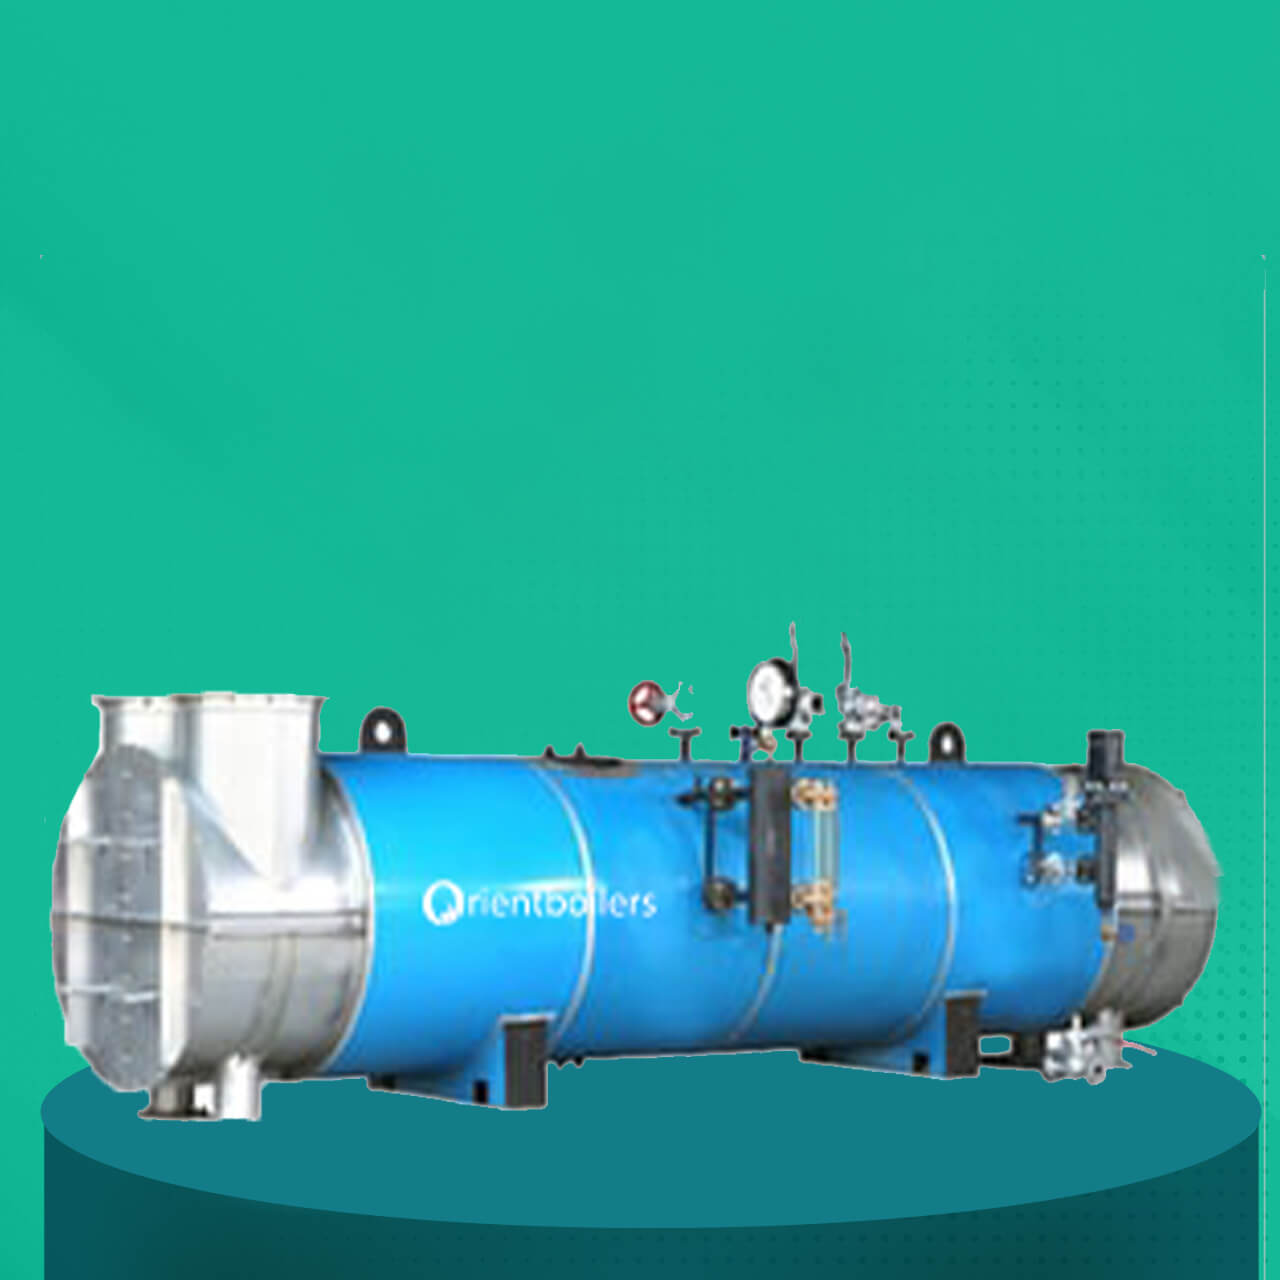 Exhaust Gas Boiler